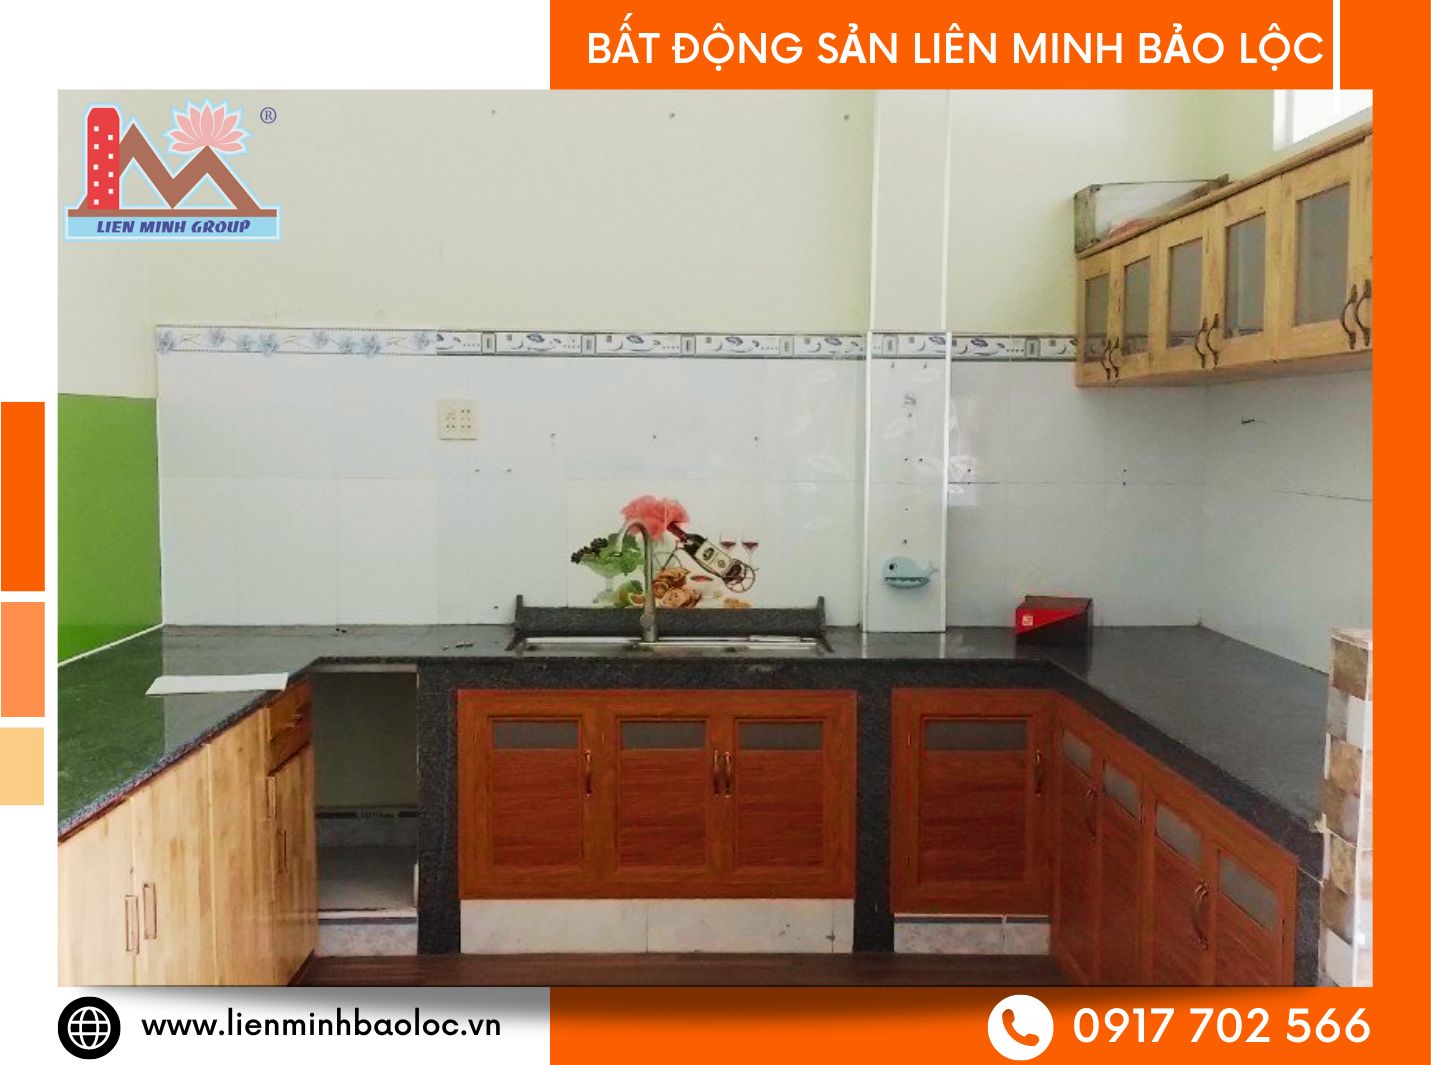 Nhà cho thuê mặt tiền Trần Phú Bảo Lộc giá rẻ